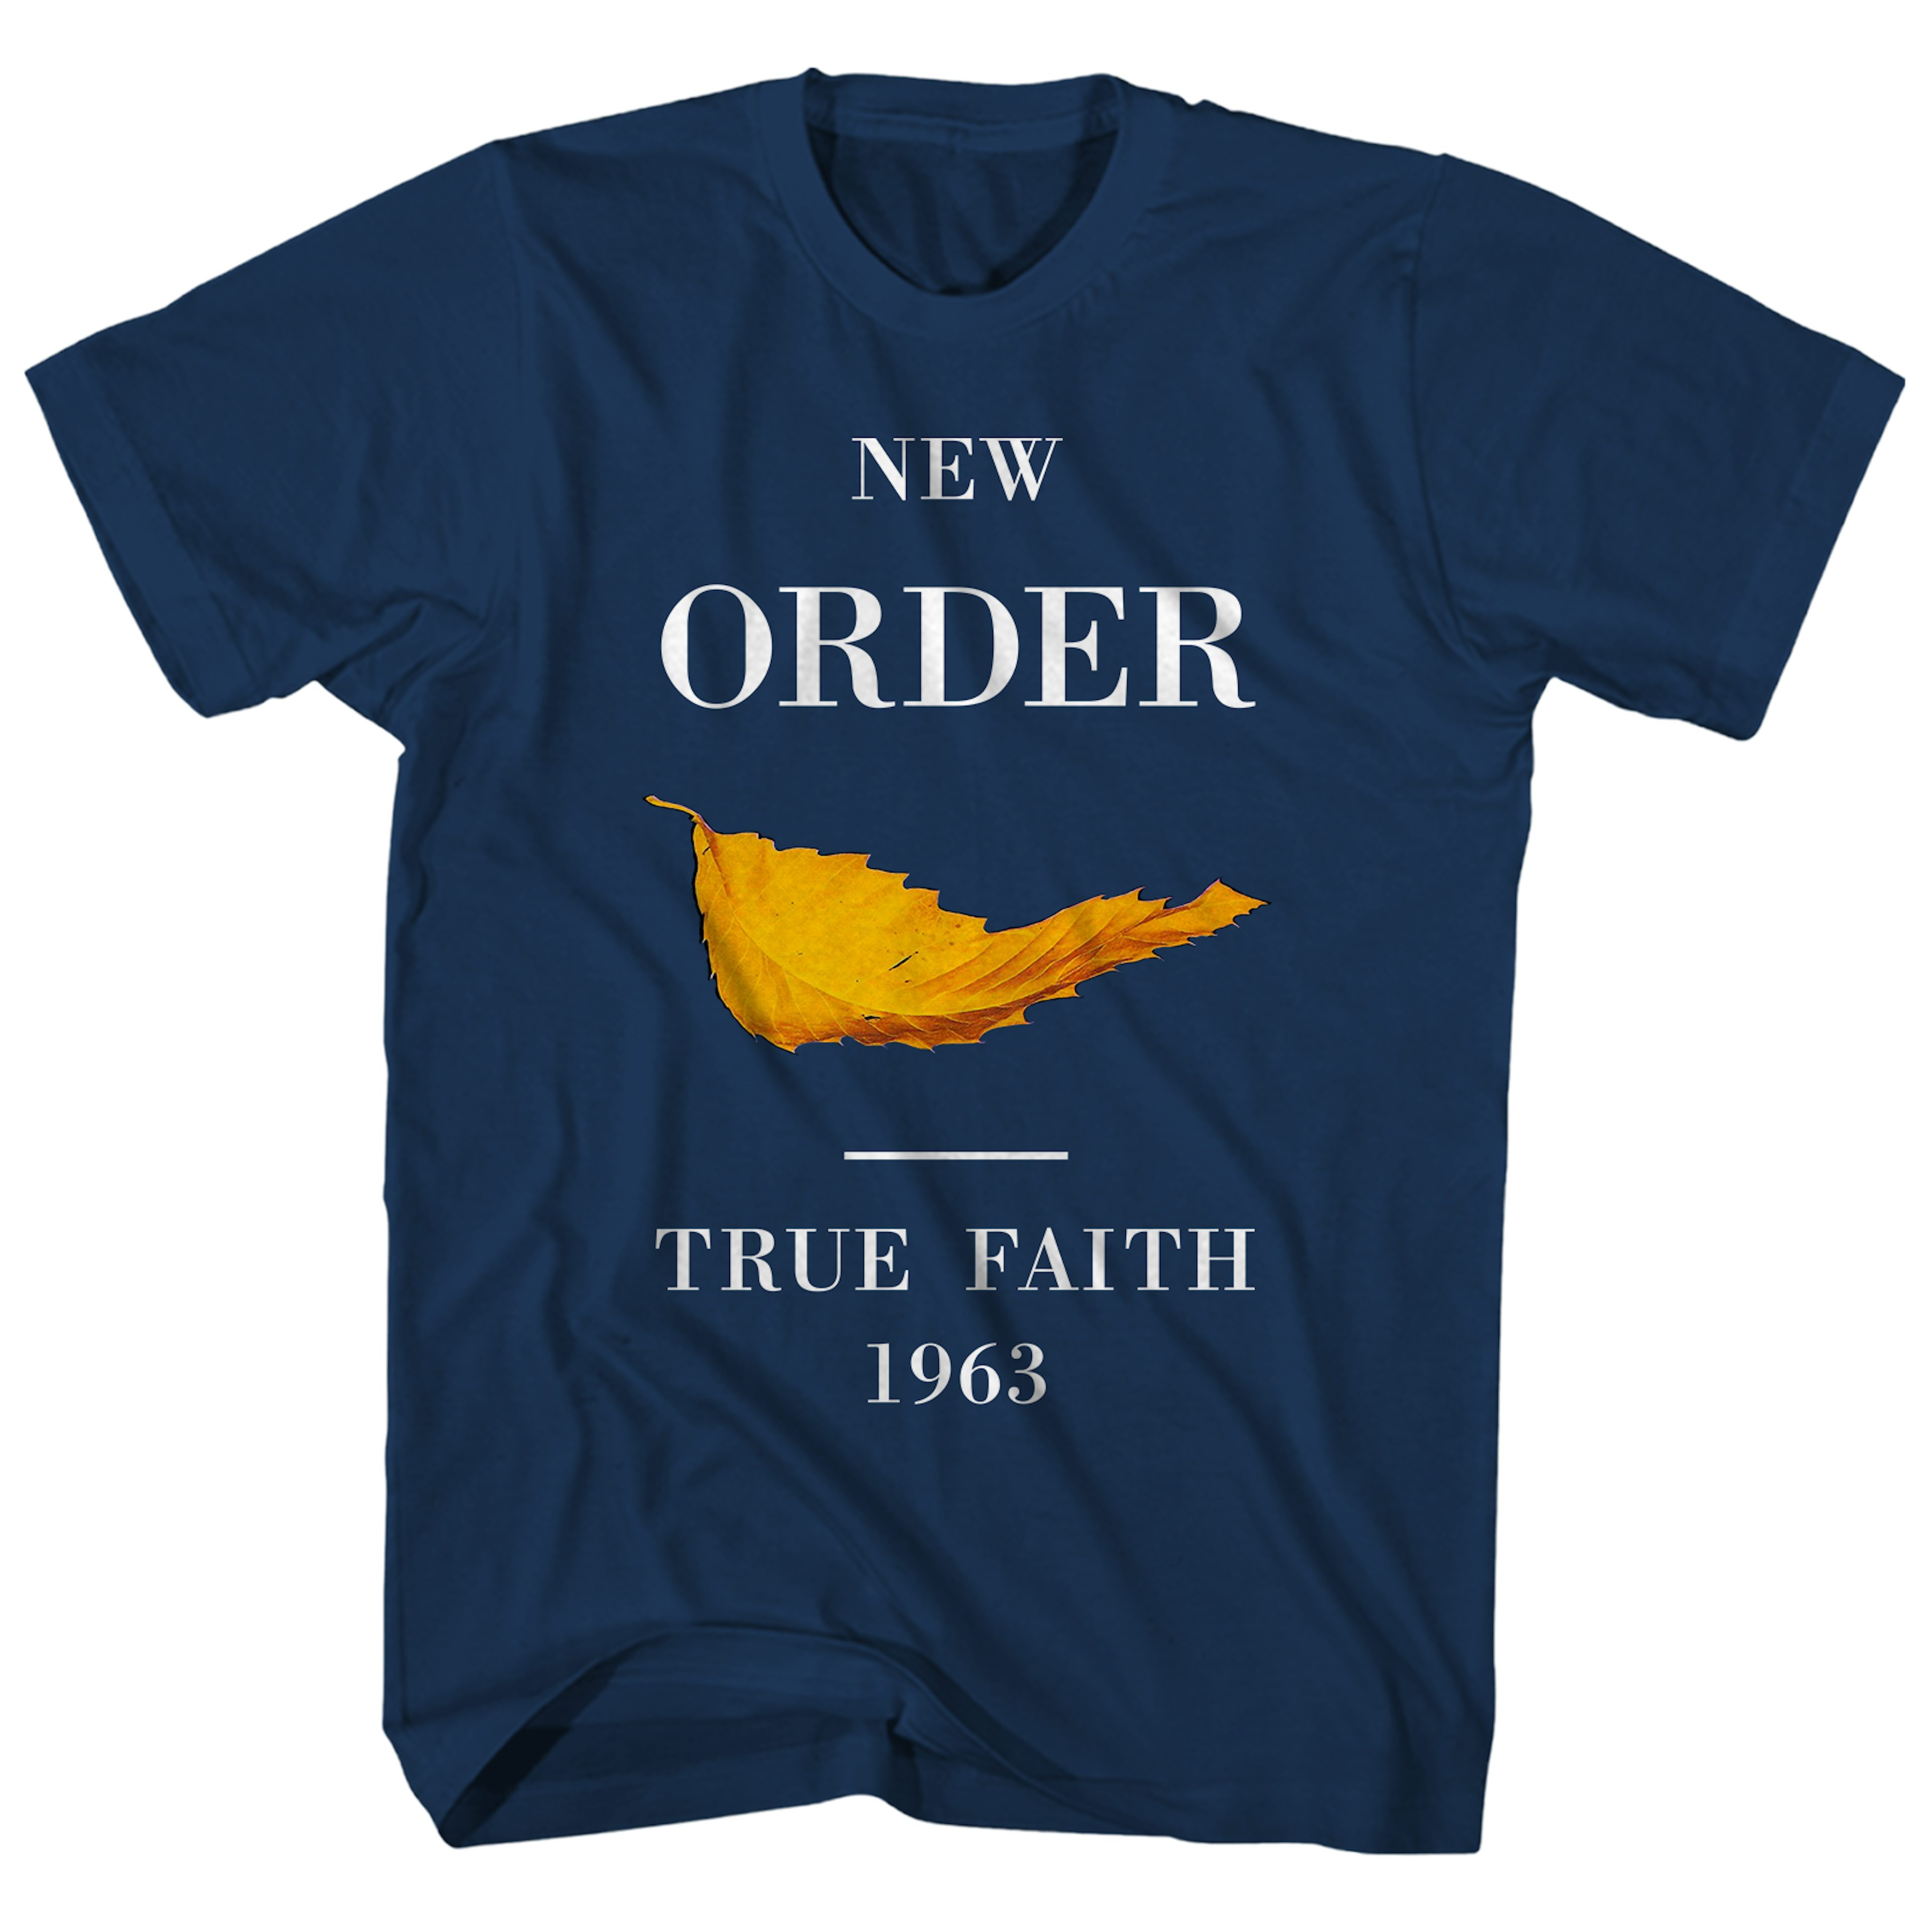 True faith new. New order true Faith. New order – true Faith\1963. Футболка SC New order. Футболка 1963.